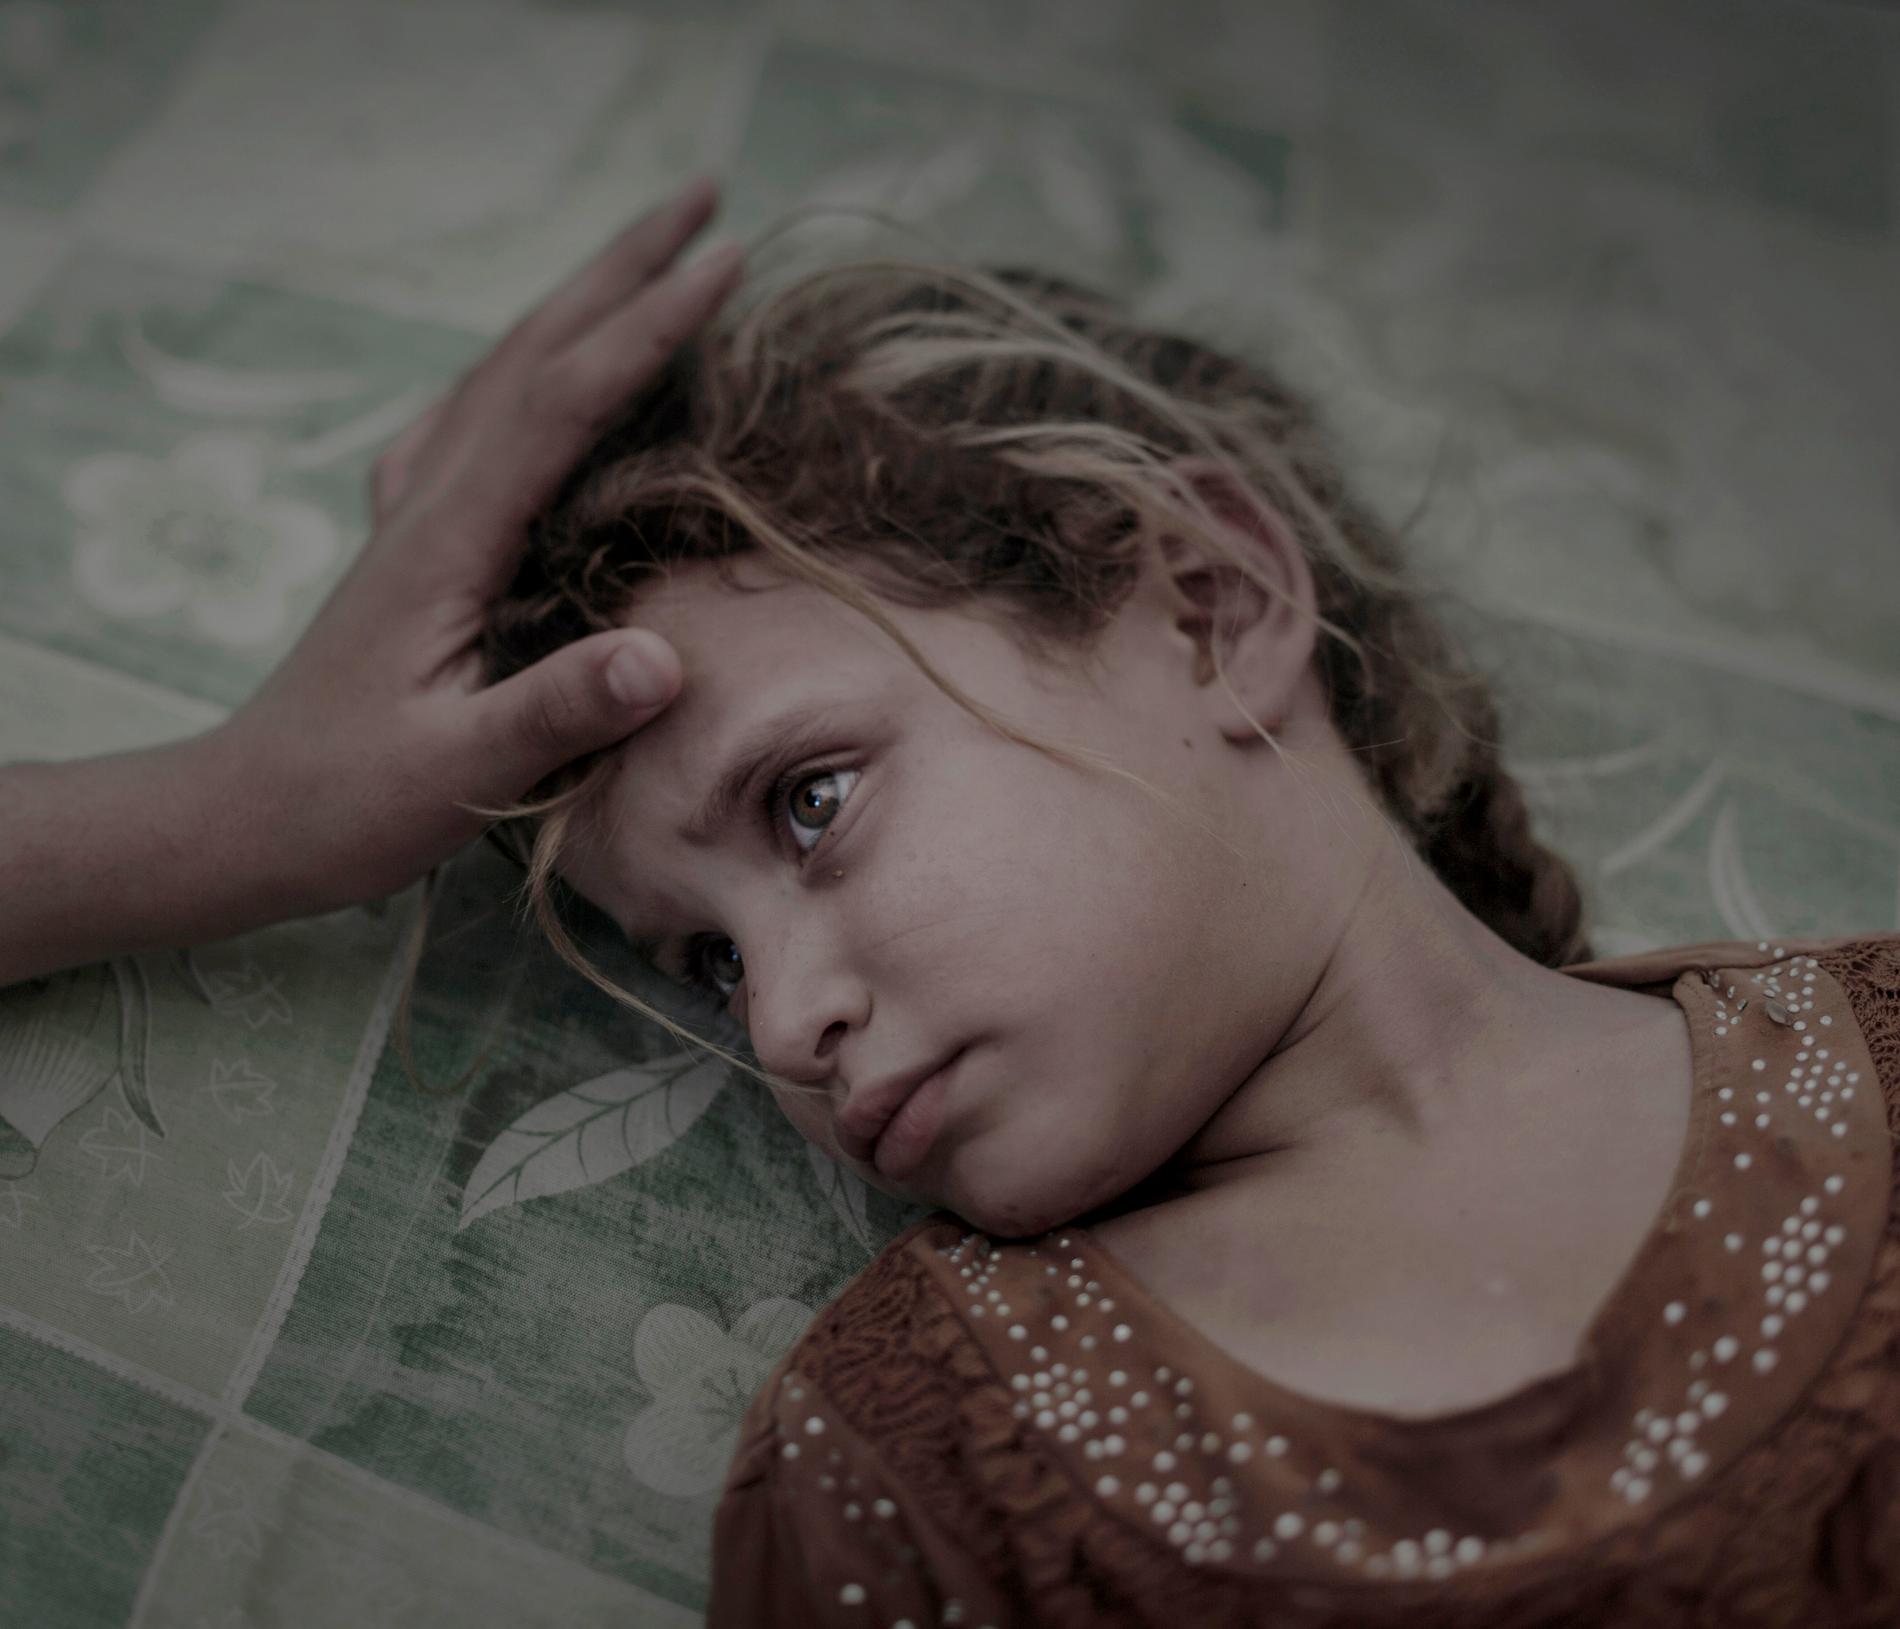 Porträtt Förstapris. Maha och hennes familj flydde från byn Hawiga utanför Mosul. Skräcken för IS och bristen på mat gjorde att de var tvungna att lämna sitt hem, berättar hennes mamma. Nu ligger Maha på en smutsig madrass i det överfulla transit-tältet i flyktinglägret Debaga. ”Jag drömmer inte och jag är inte rädd för någonting längre”, säger Maha tyst, samtidigt som hennes mammas hand stryker henne över håret. 